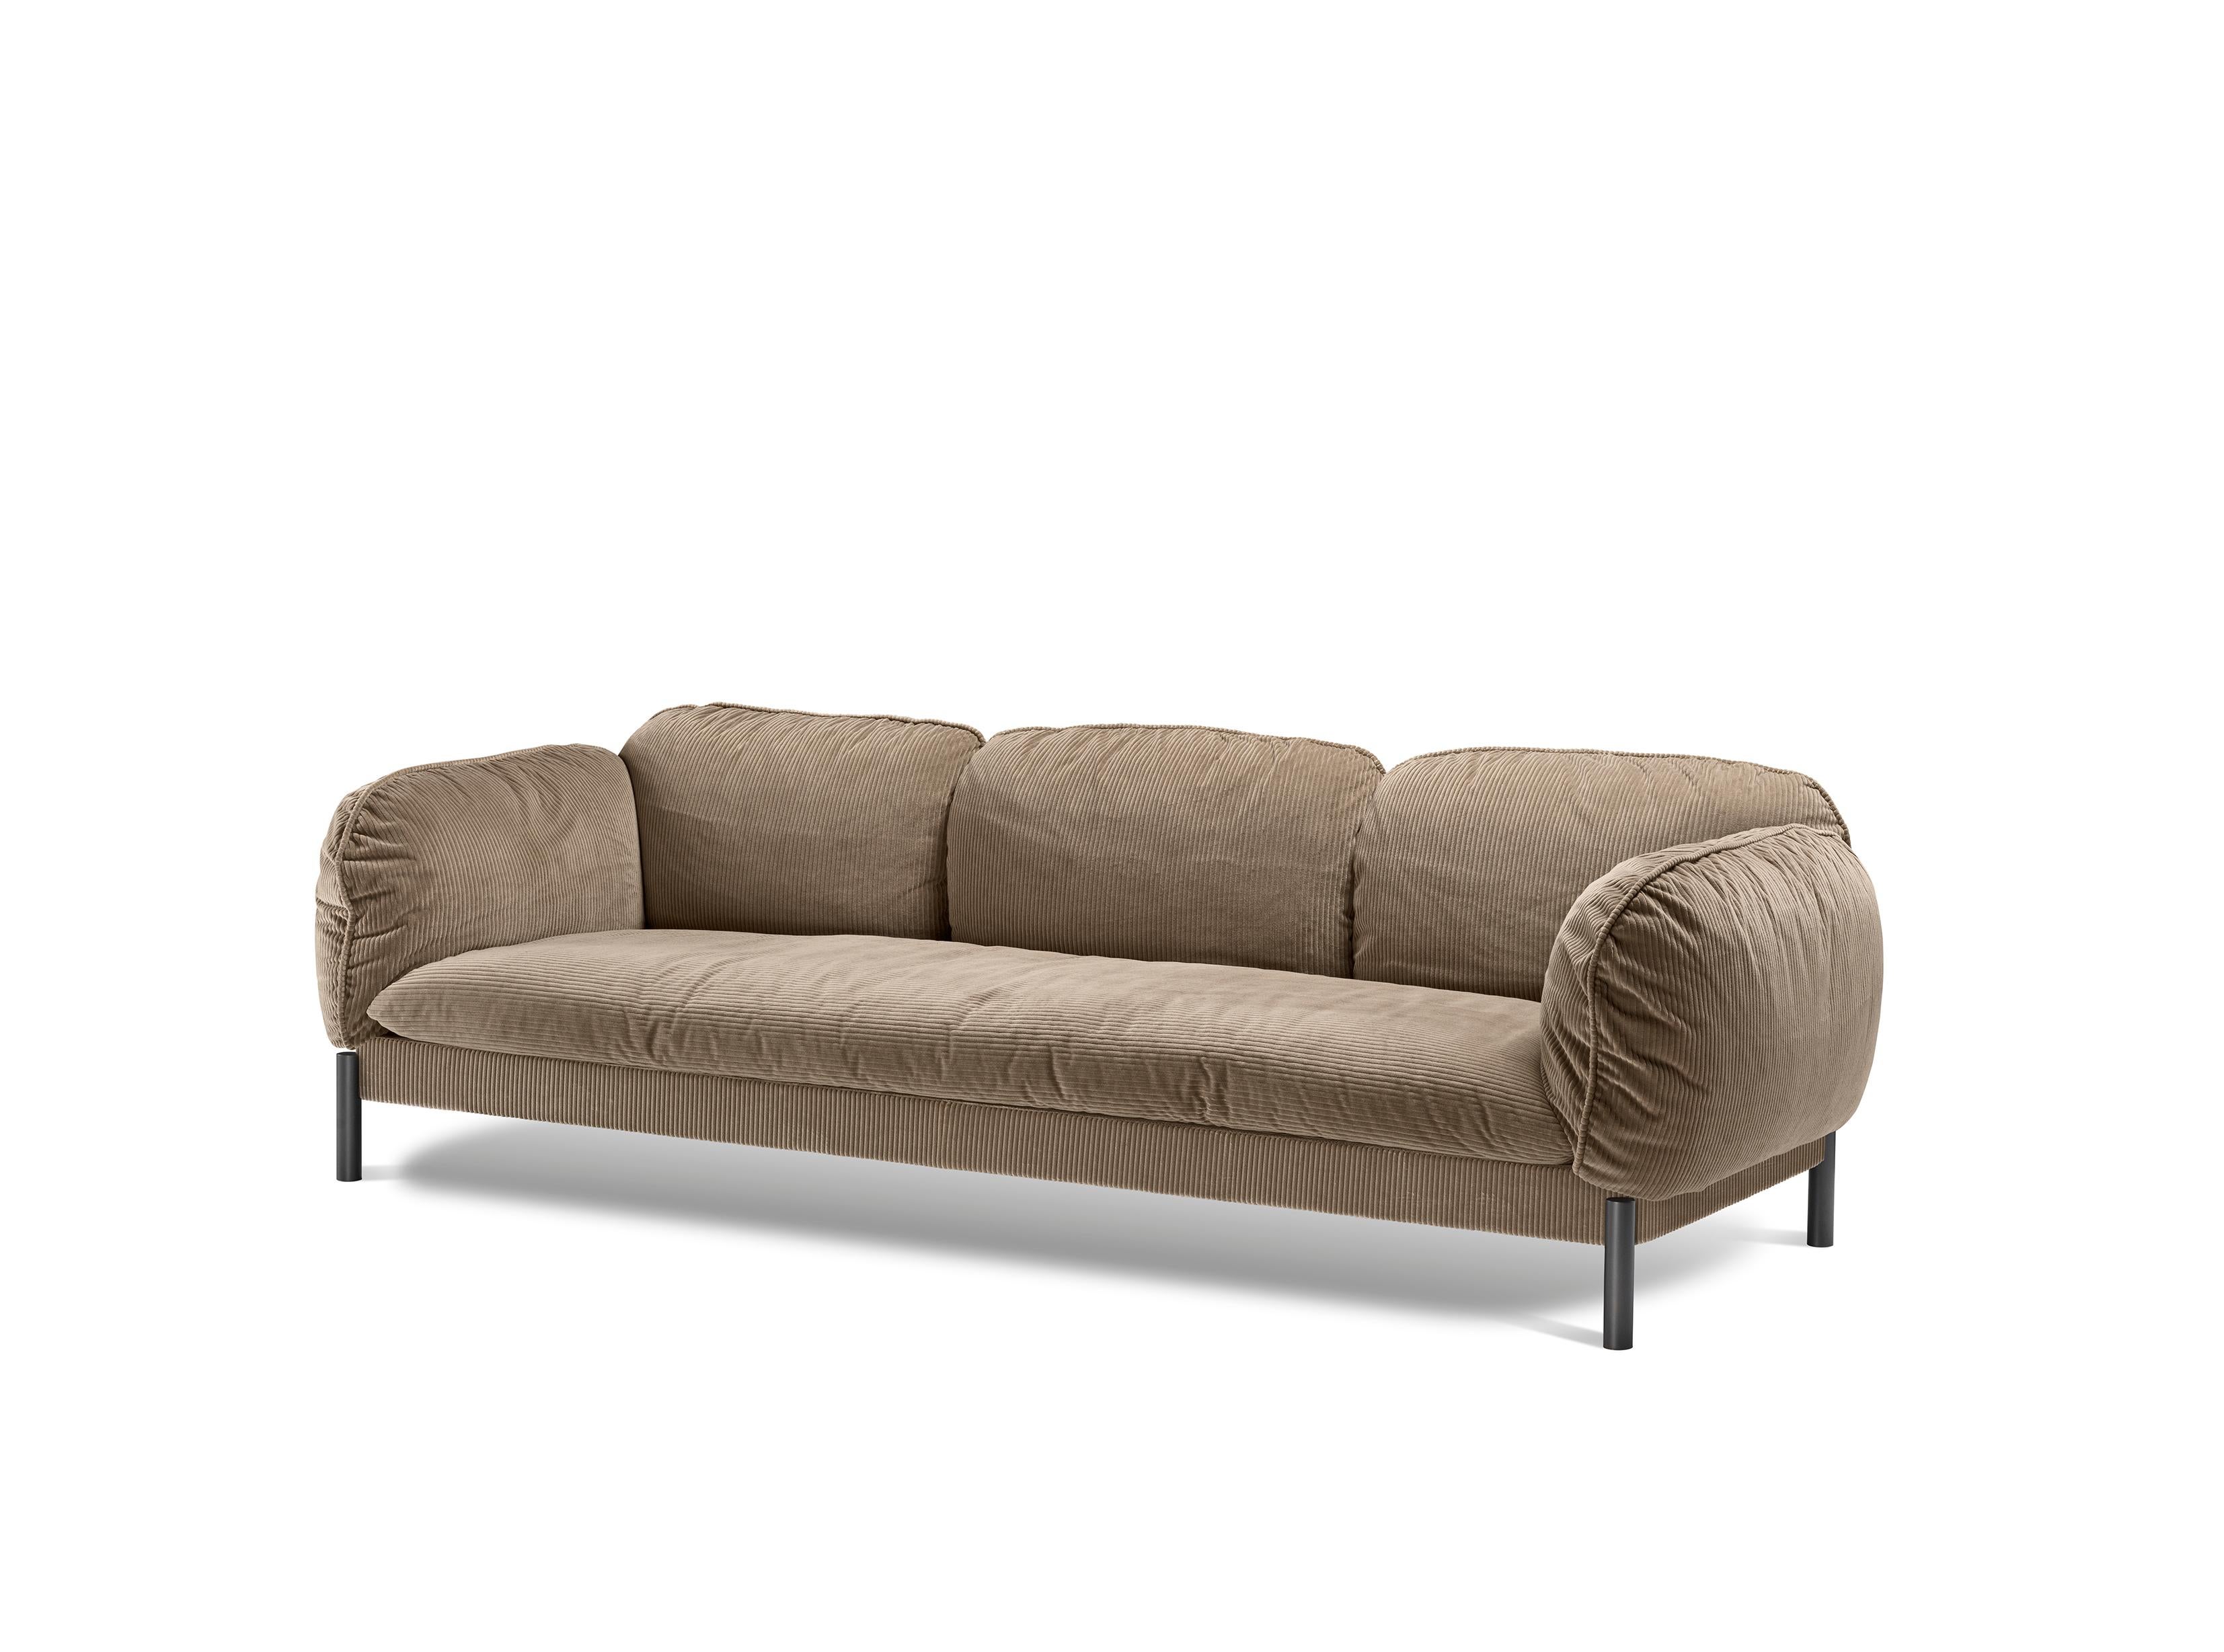 Dieses weiche und einladende Sofa ist von den 1970er Jahren inspiriert, einem Jahrzehnt, das unsere Kultur durch Freiheit und Selbstentdeckung für immer verändert hat. Das Sofa lädt Sie in eine Welt der Fantasie ein, in der Sie sich bequem und